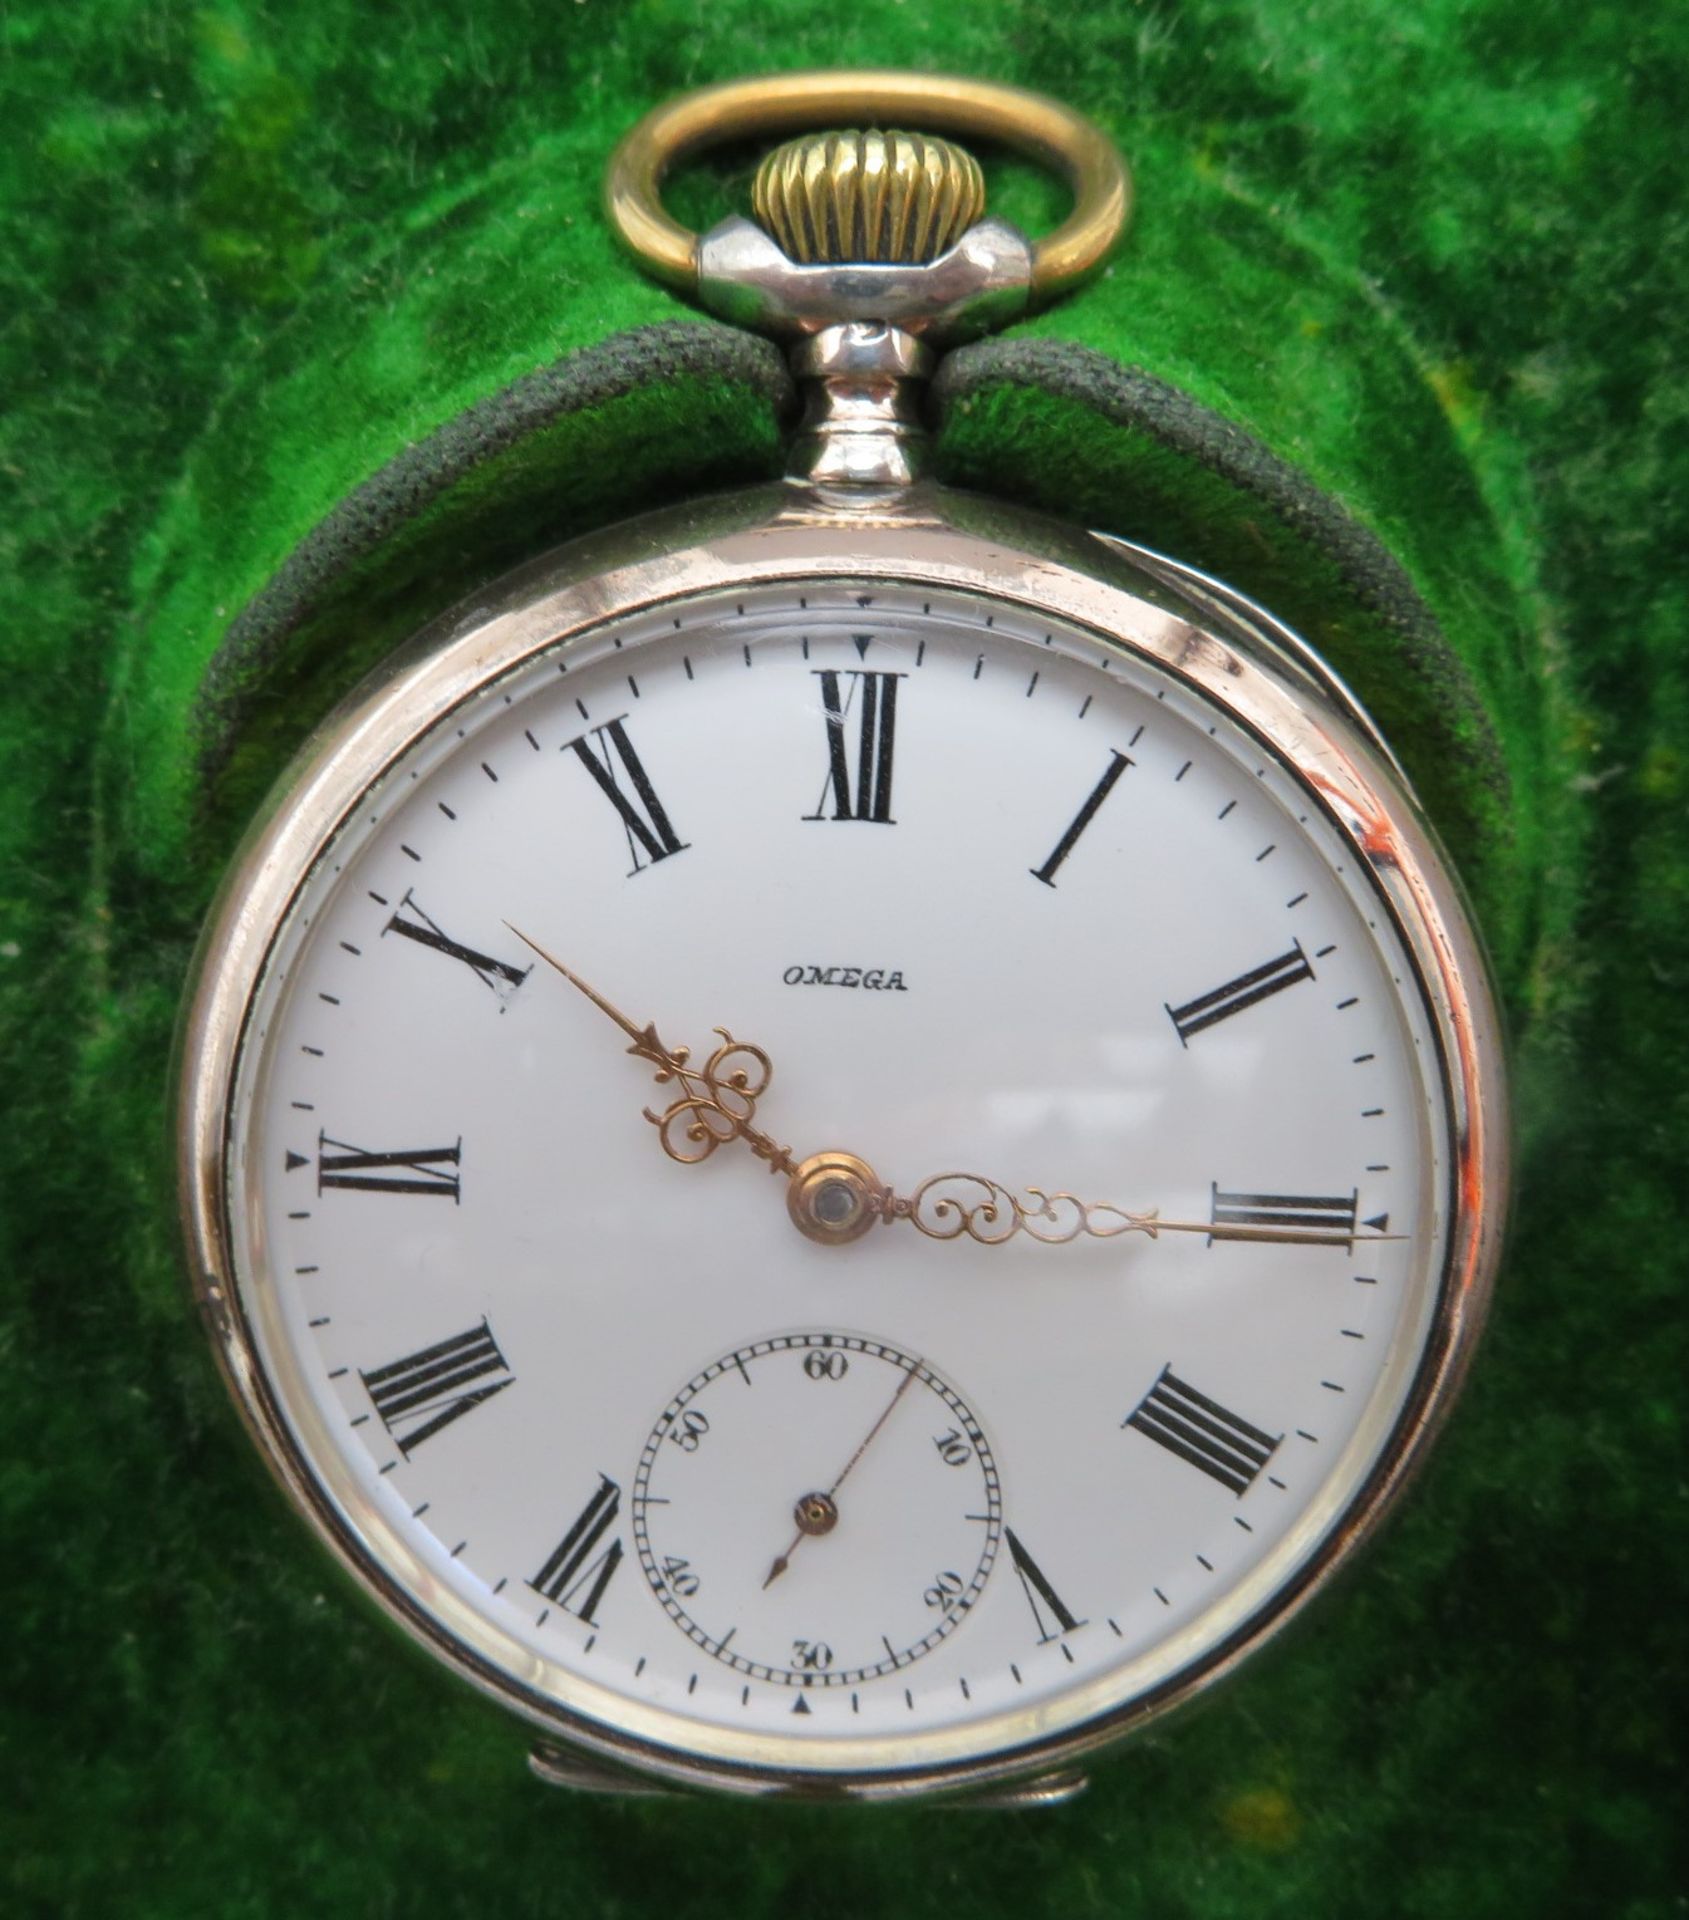 Taschenuhr, Omega, um 1900, Gehäuse und Innendeckel Silber 800/000, gepunzt, Kronenaufzug, intakt,